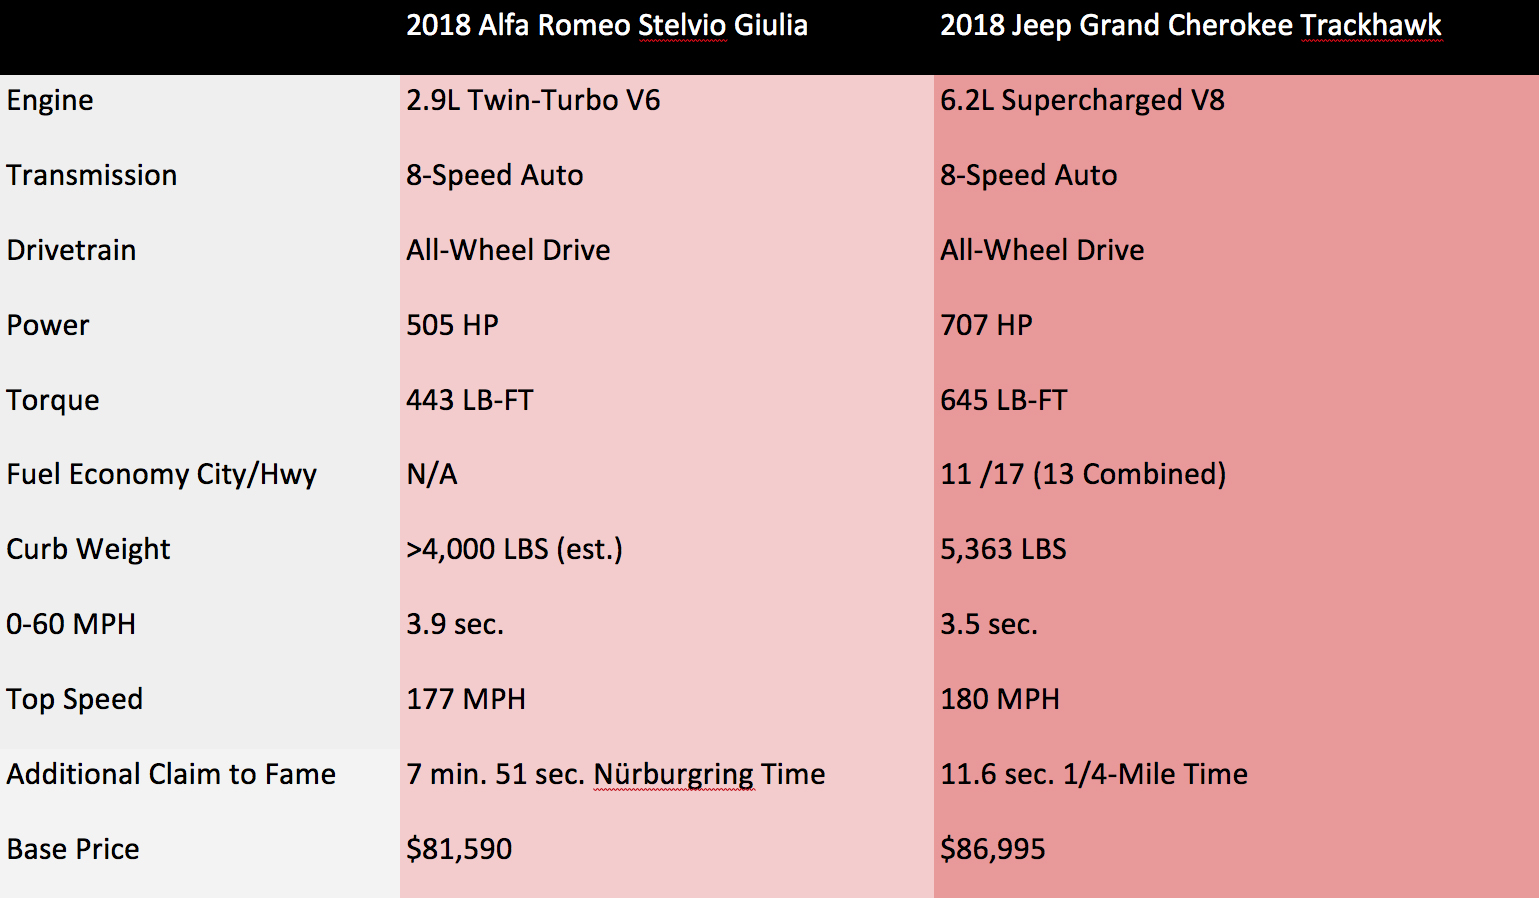 Jeep Grand Cherokee Model Comparison Chart